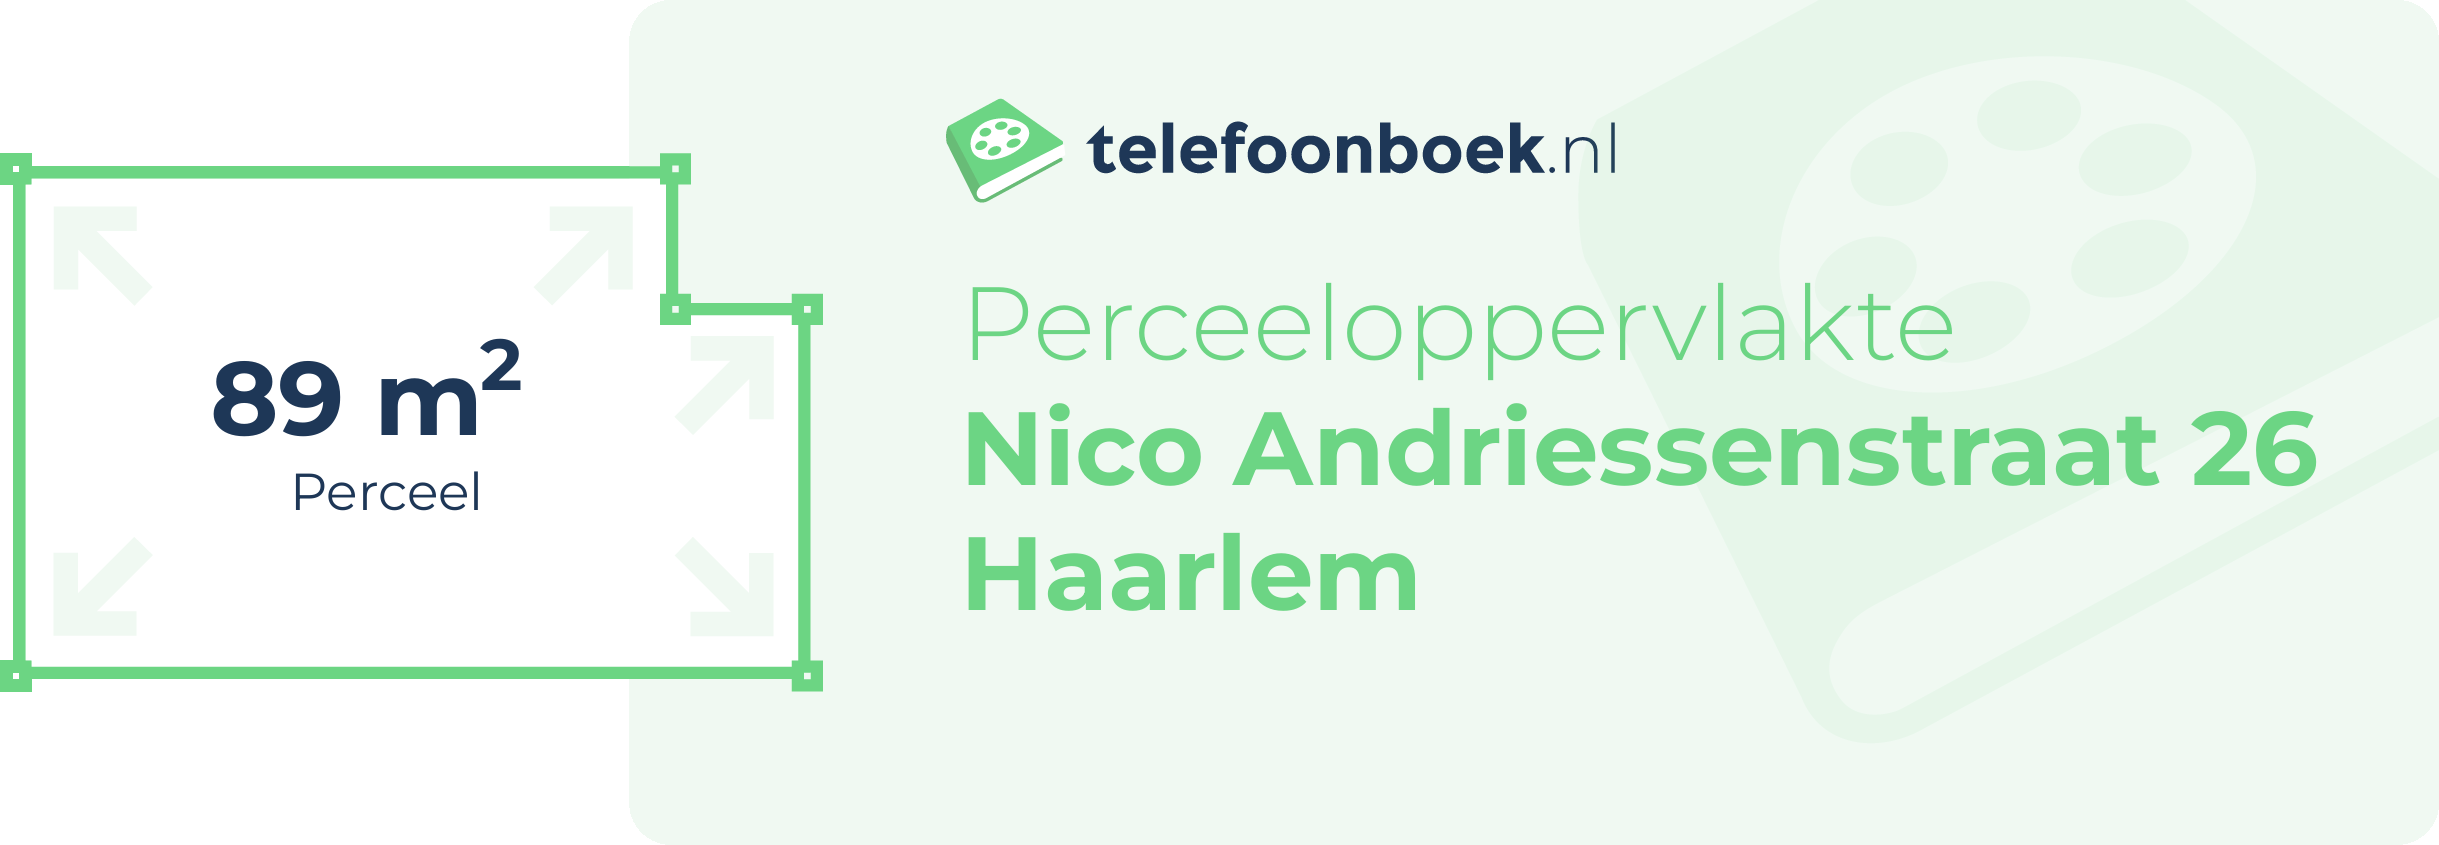 Perceeloppervlakte Nico Andriessenstraat 26 Haarlem